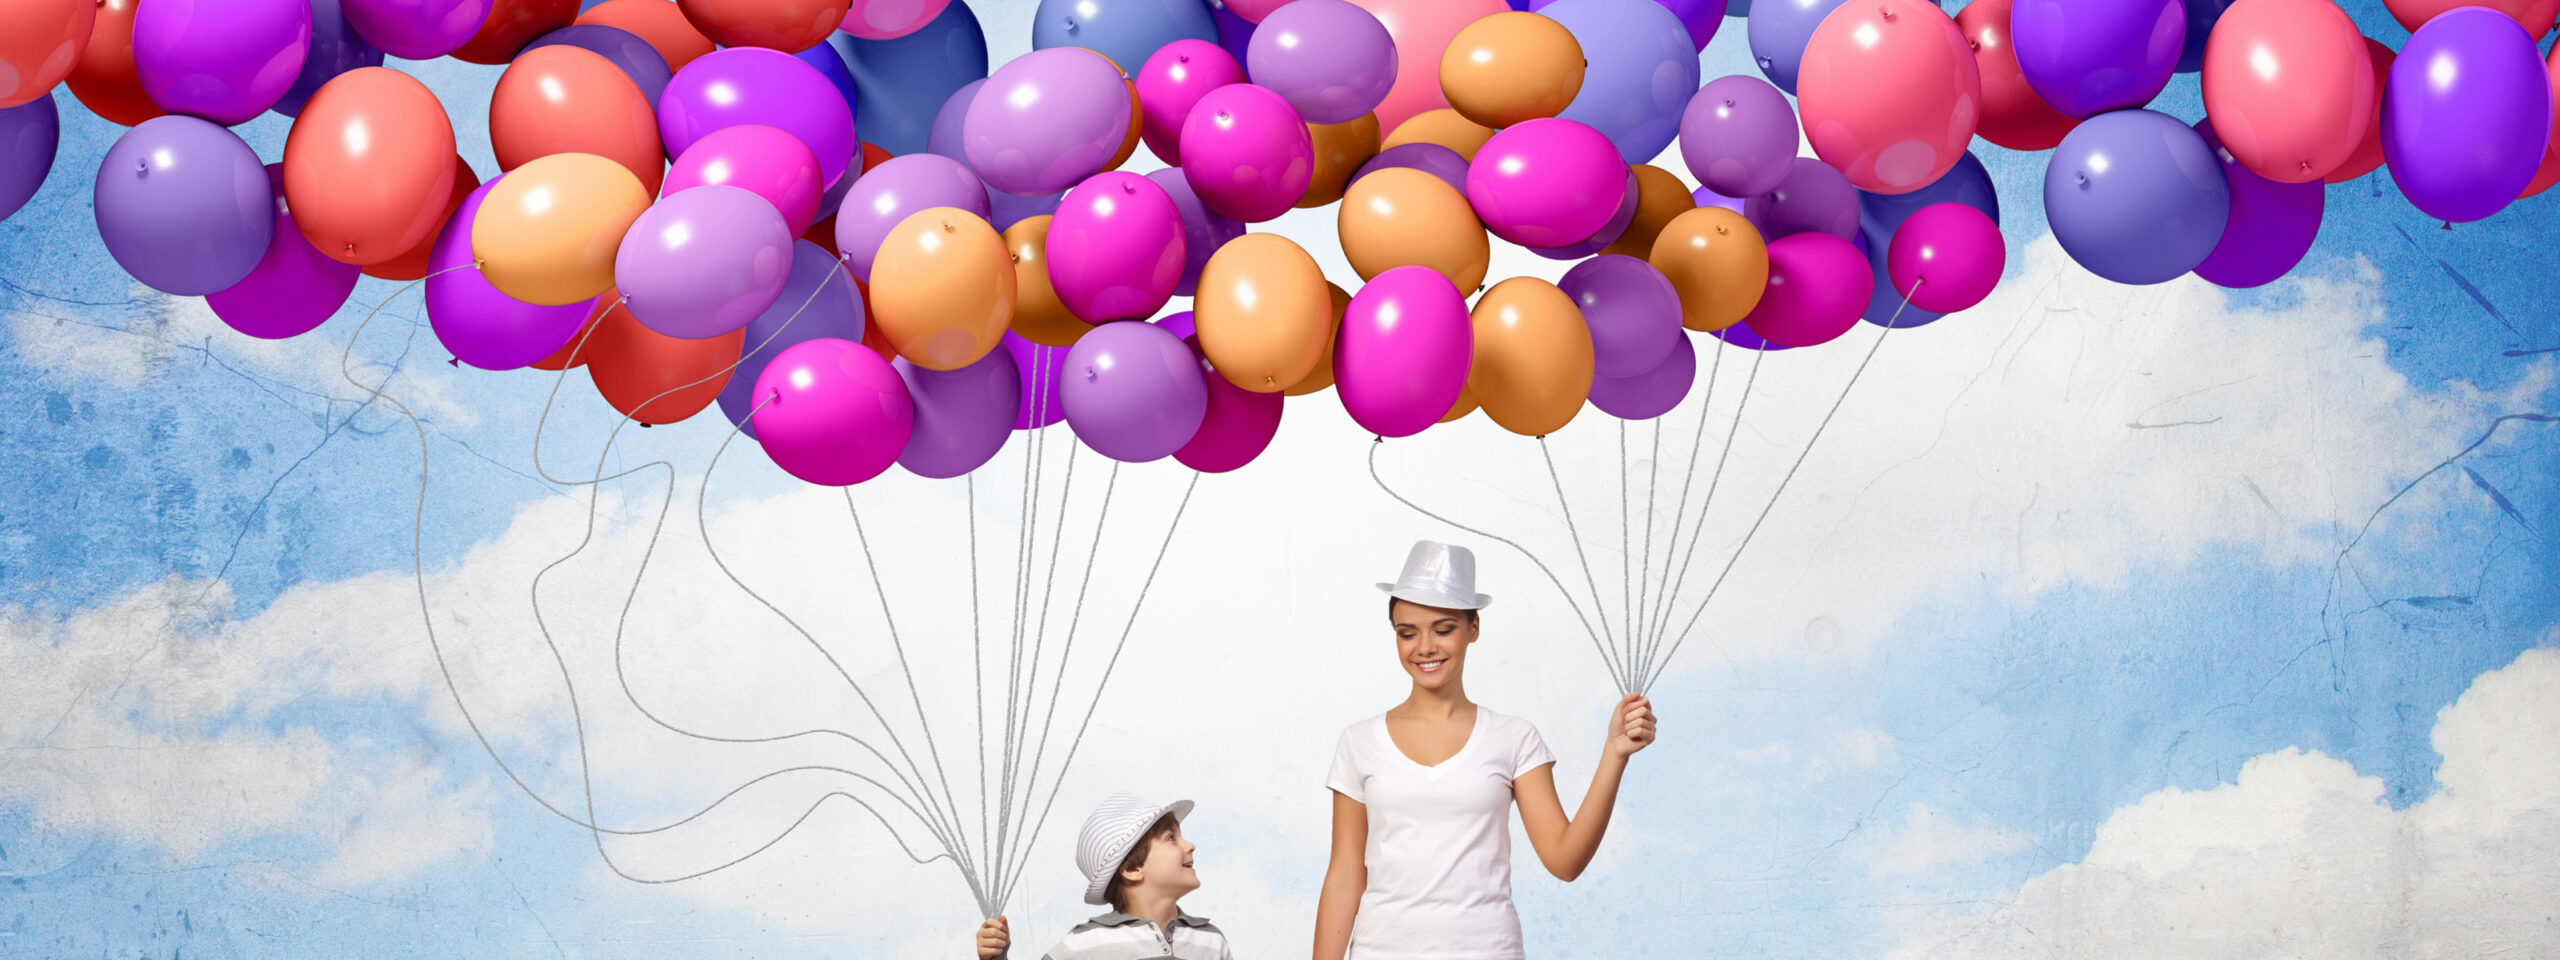 Маркетинг в воздухе: как бренды используют гелиевые шары в рекламных акциях